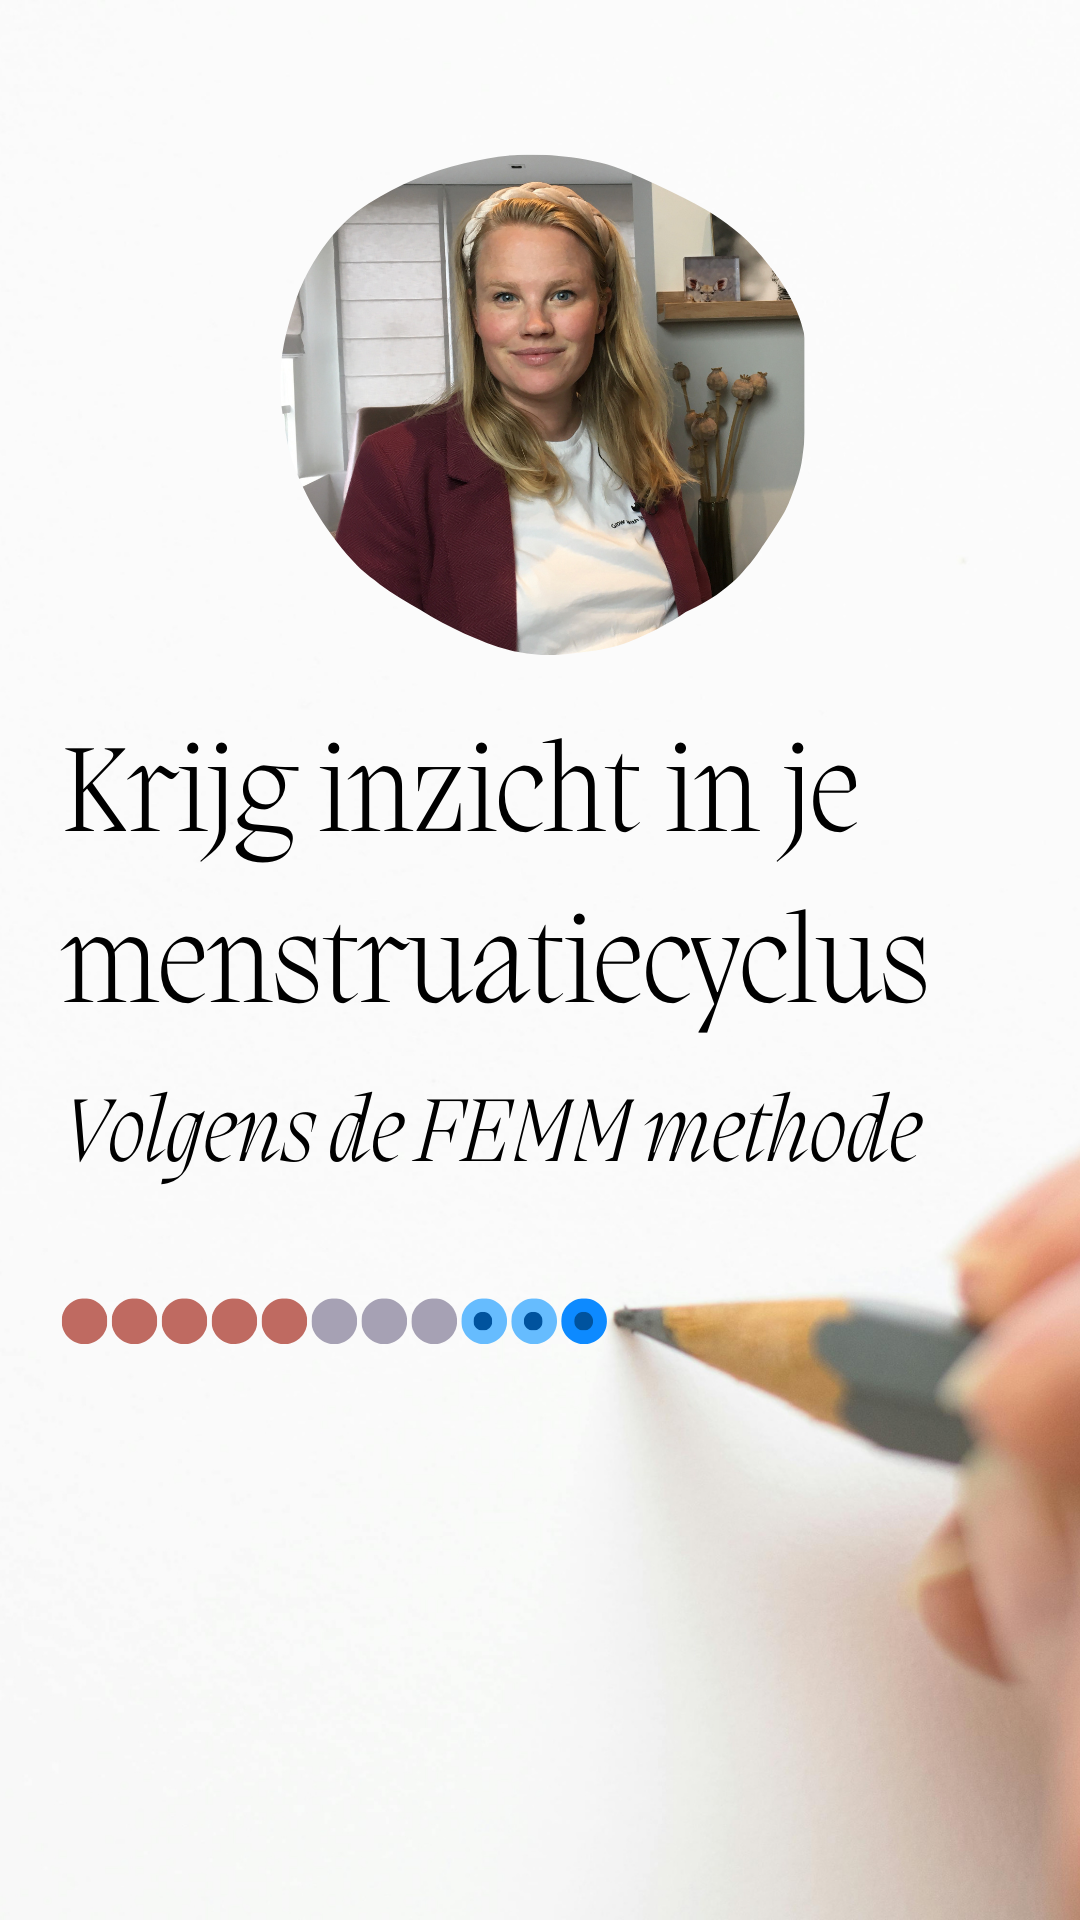 krijg inzicht in je menstruatiecyclus met de FEMM methode